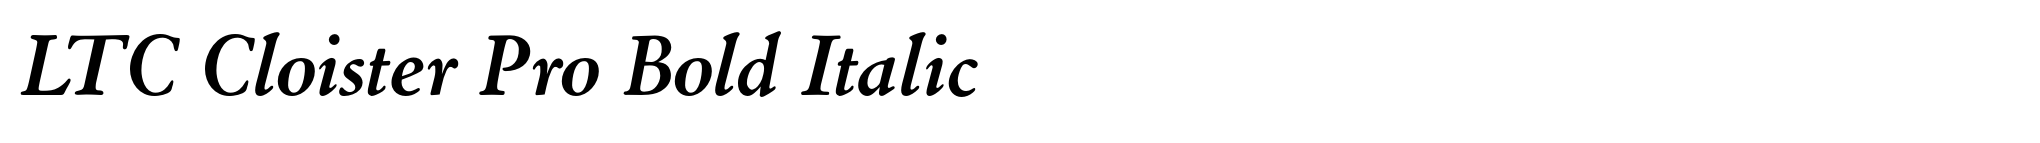 LTC Cloister Pro Bold Italic image